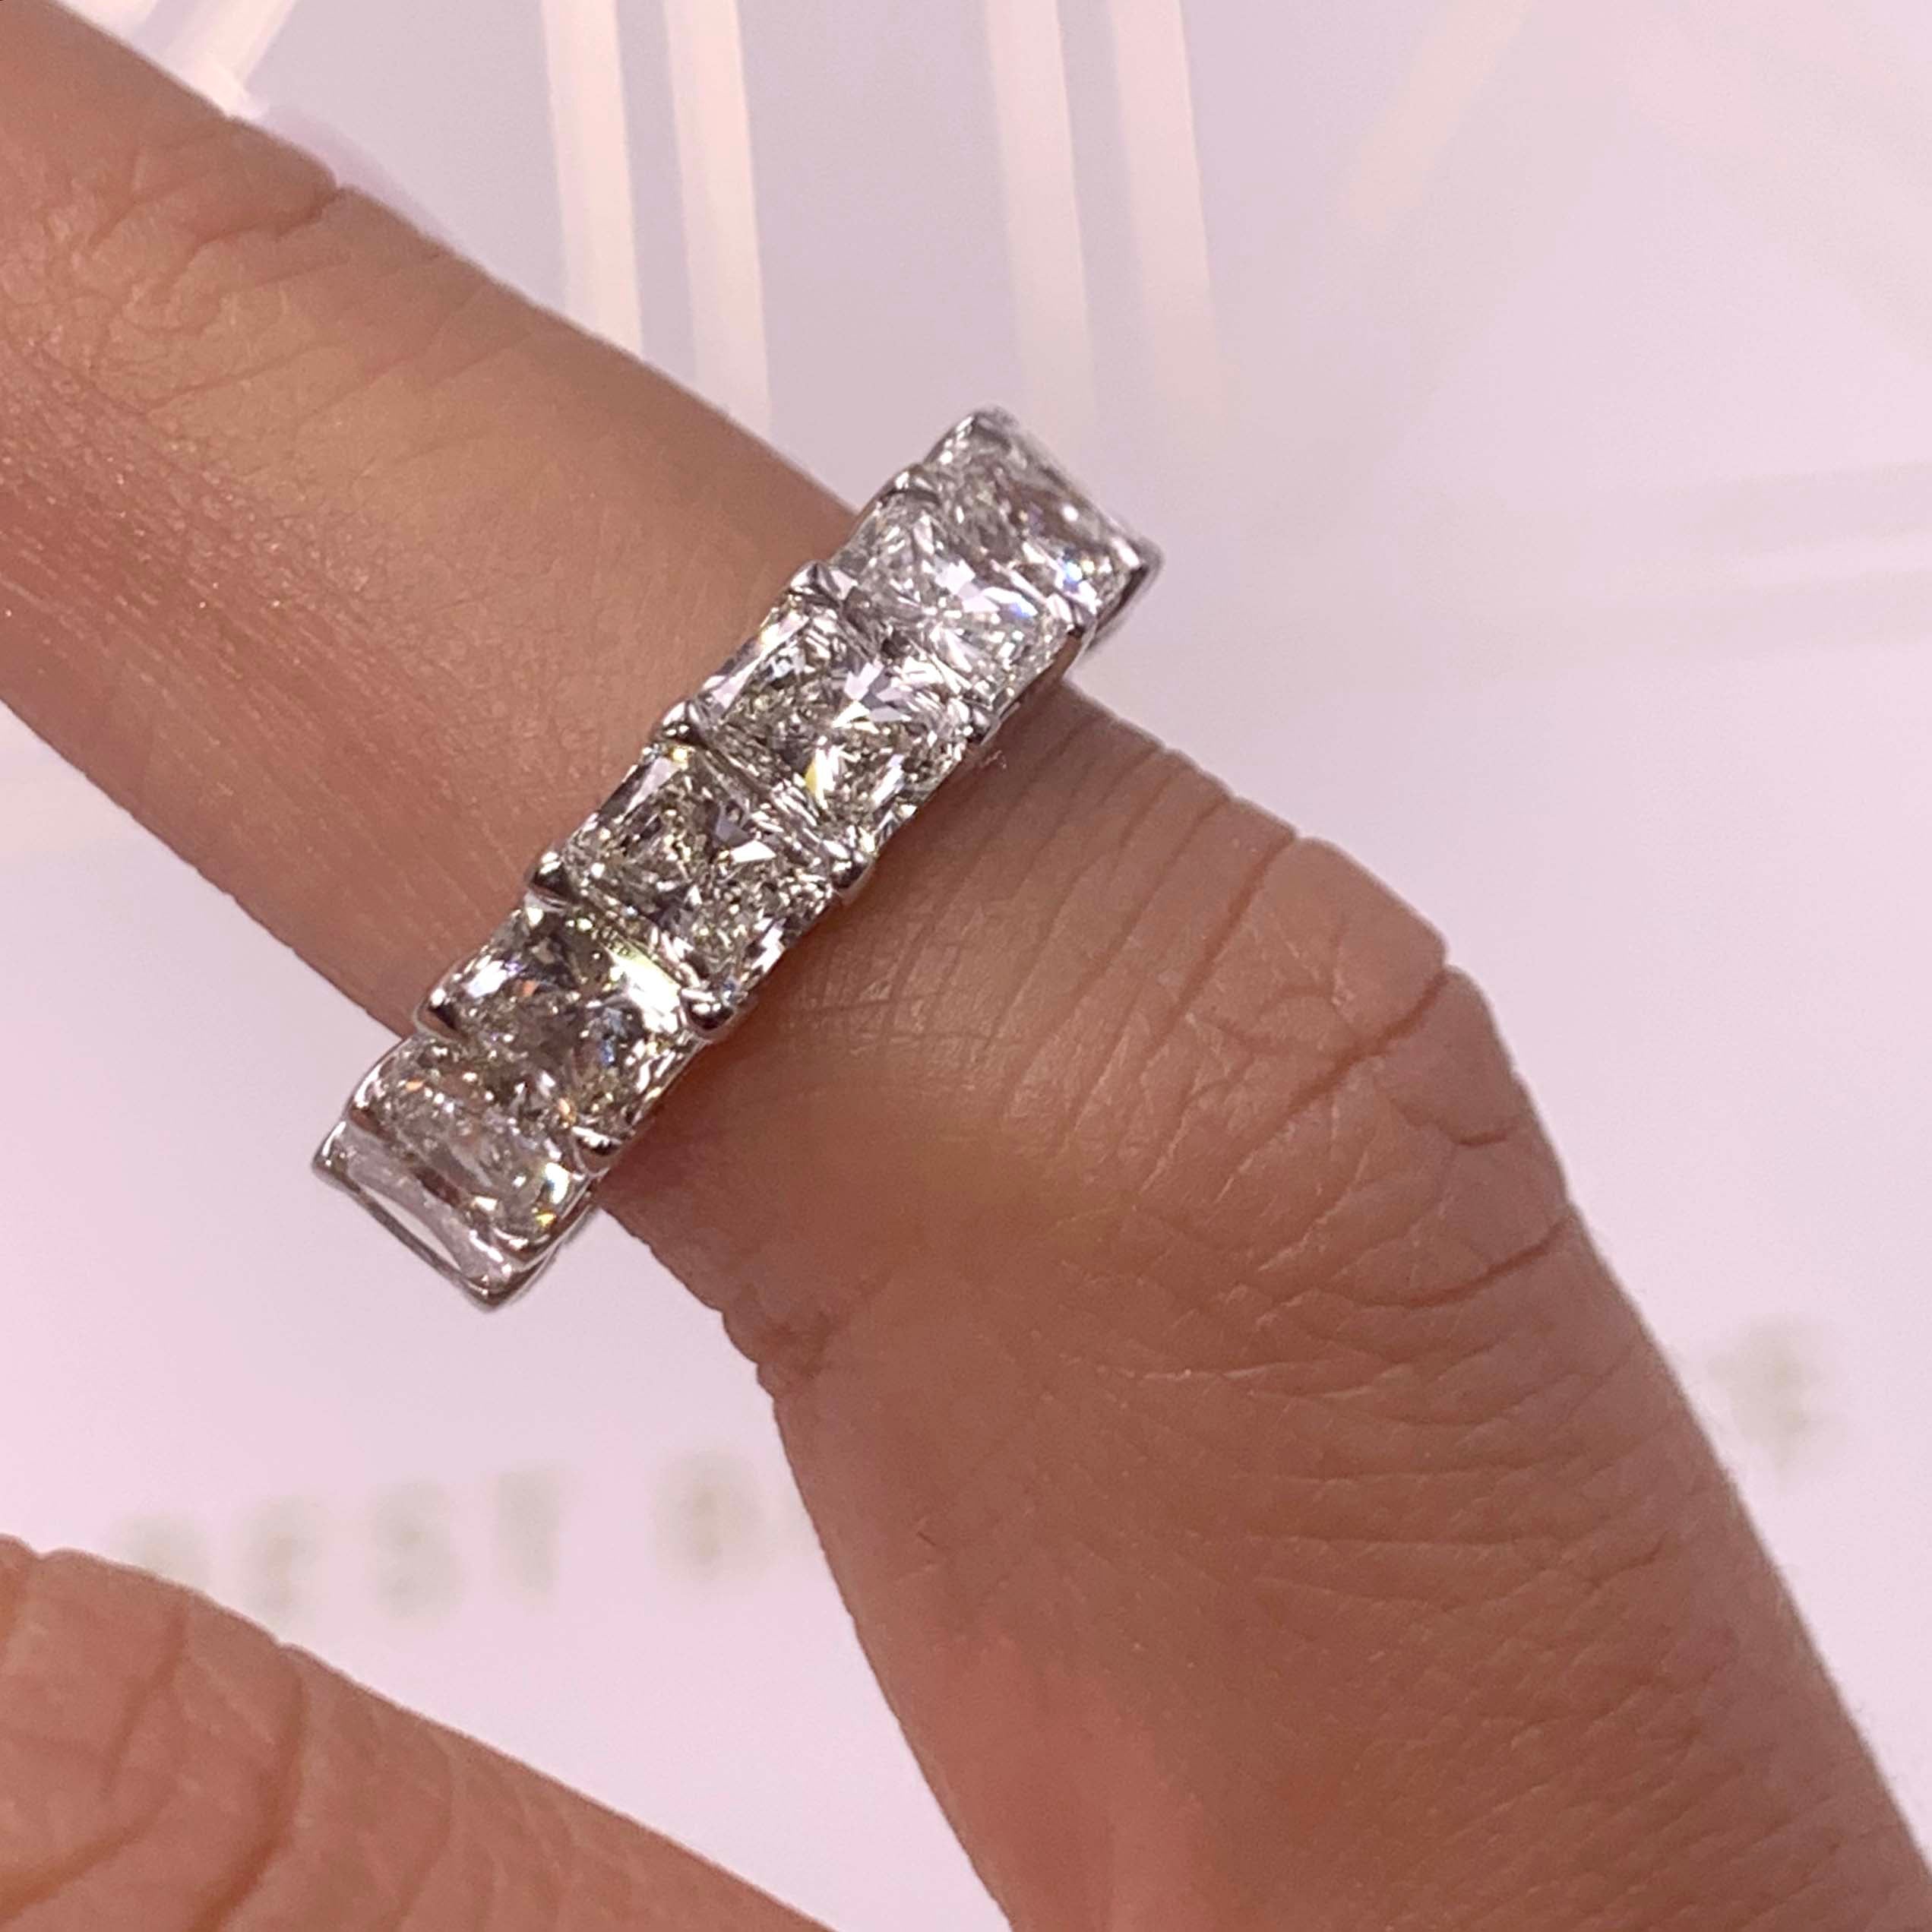 Andi Eternity Wedding Ring - 14K White Gold